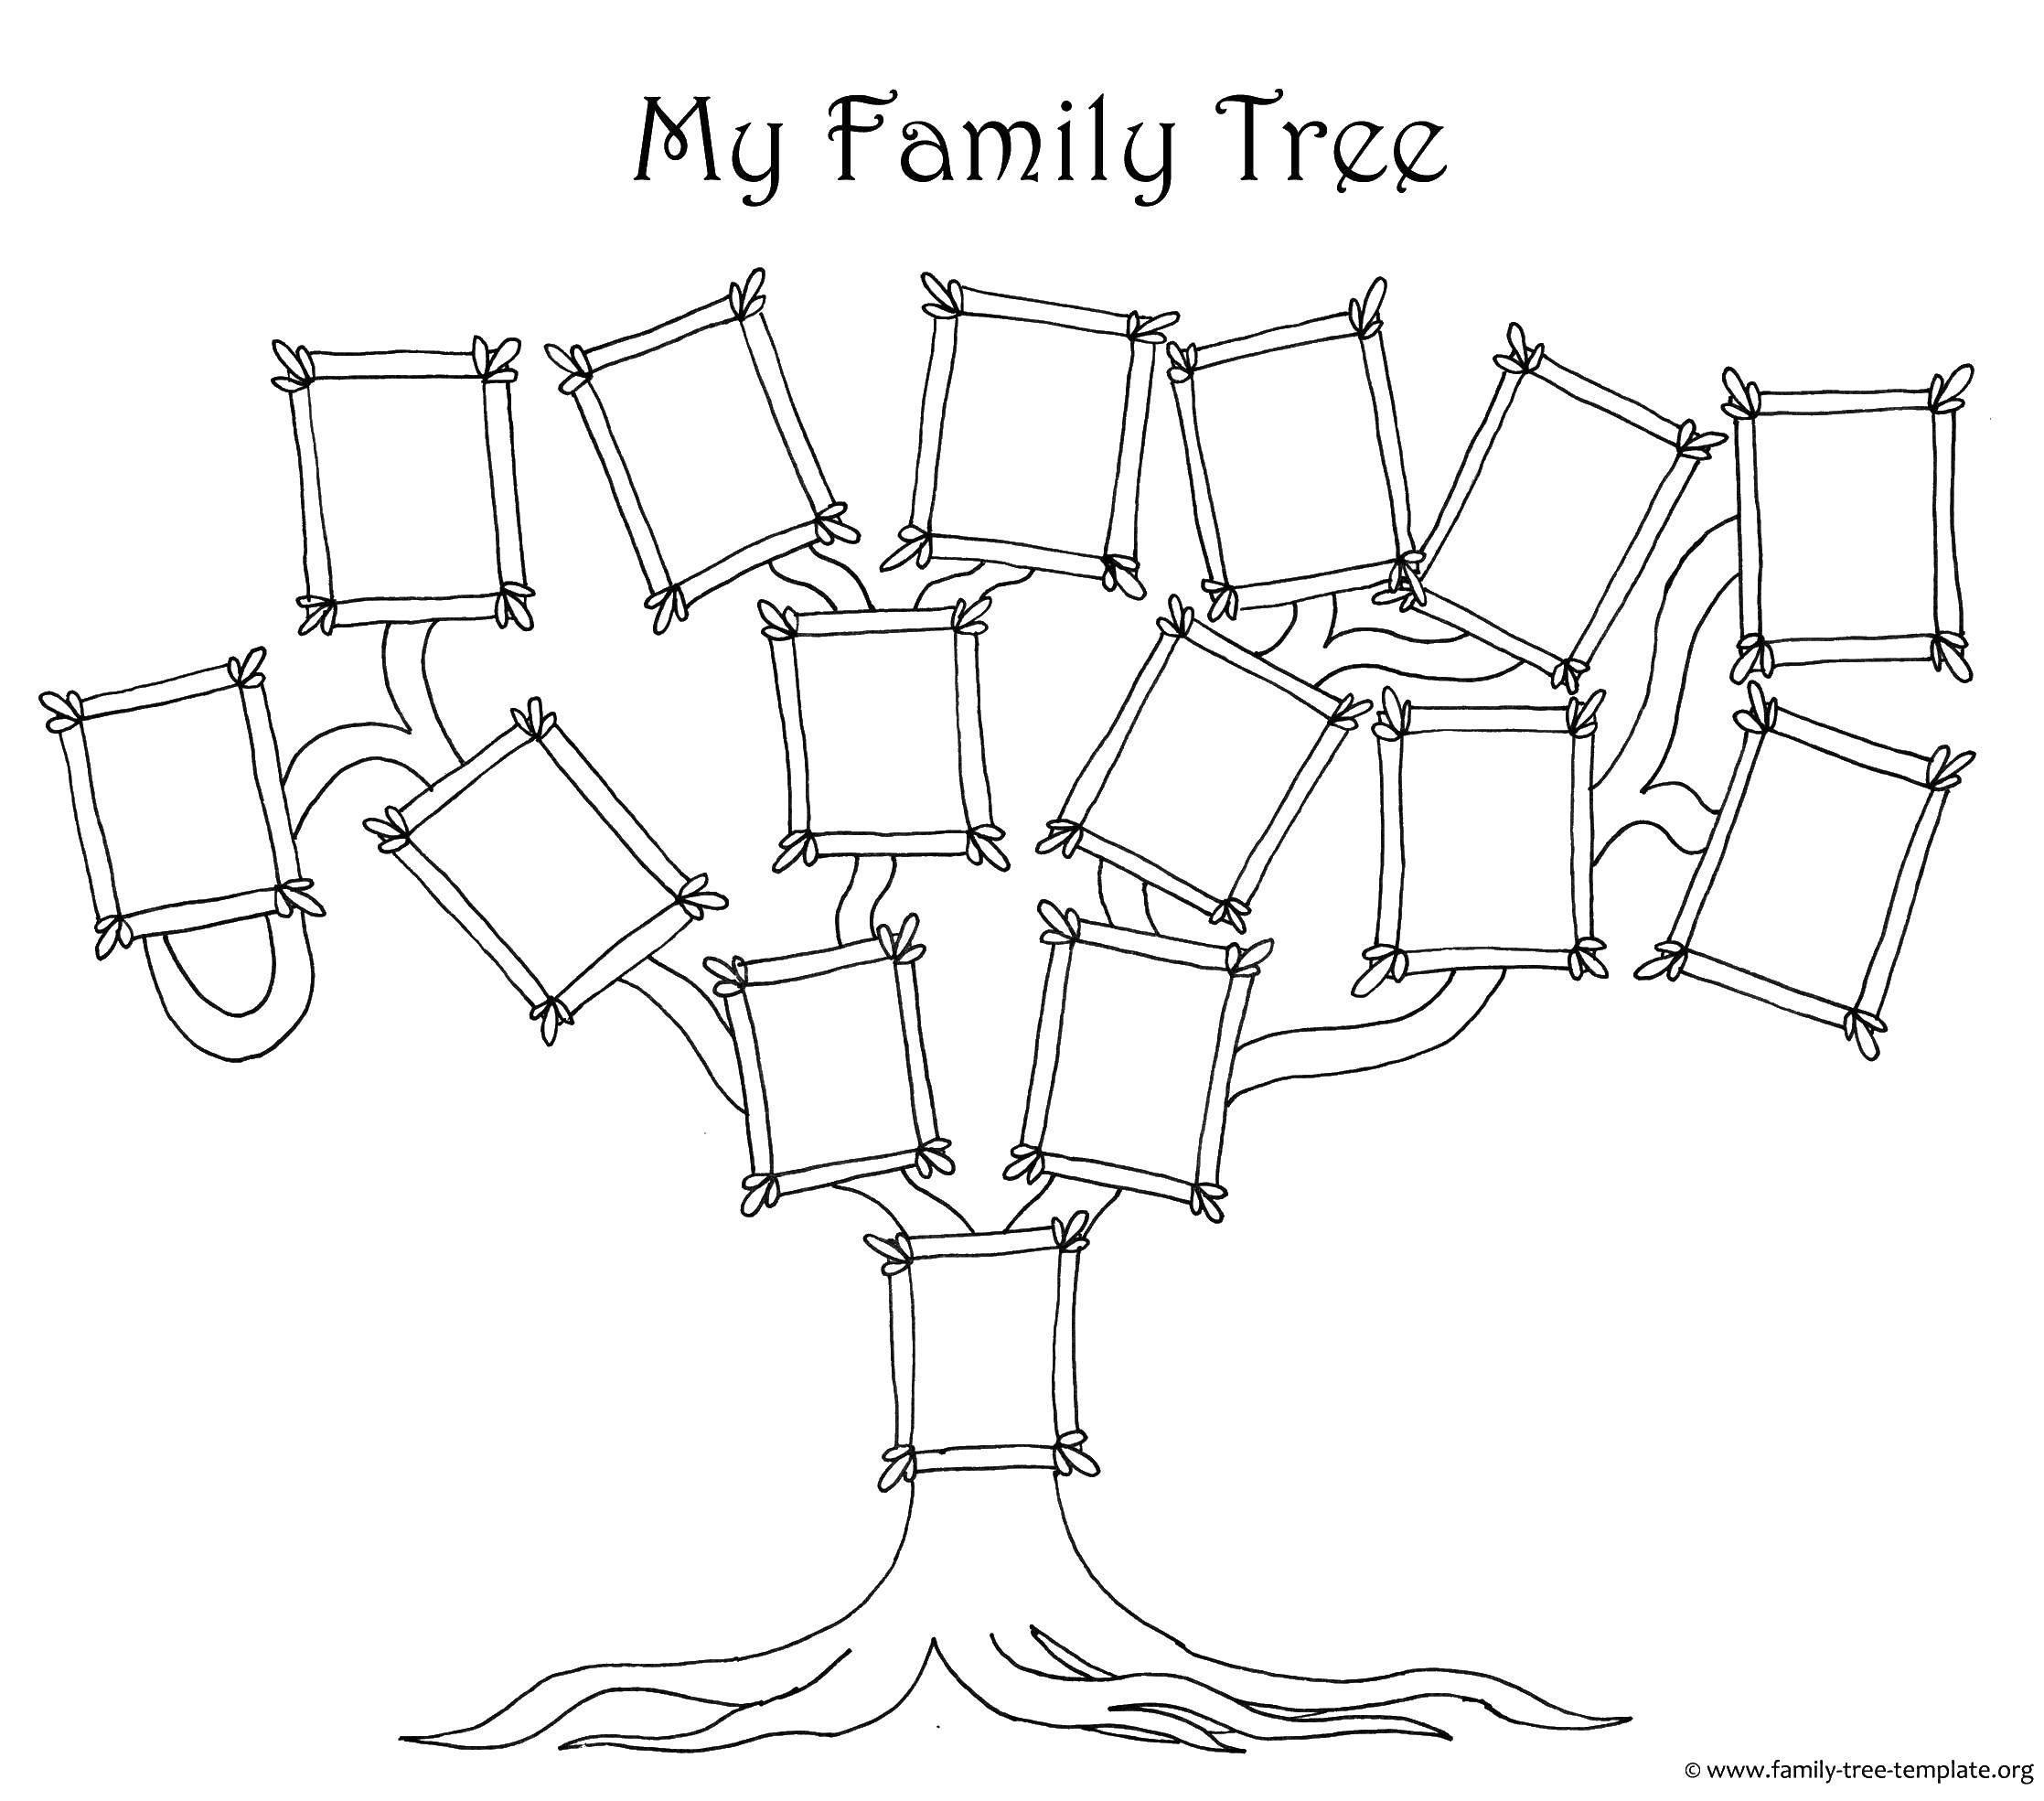 Coloring Family tree. Category Family tree. Tags:  family tree frame.